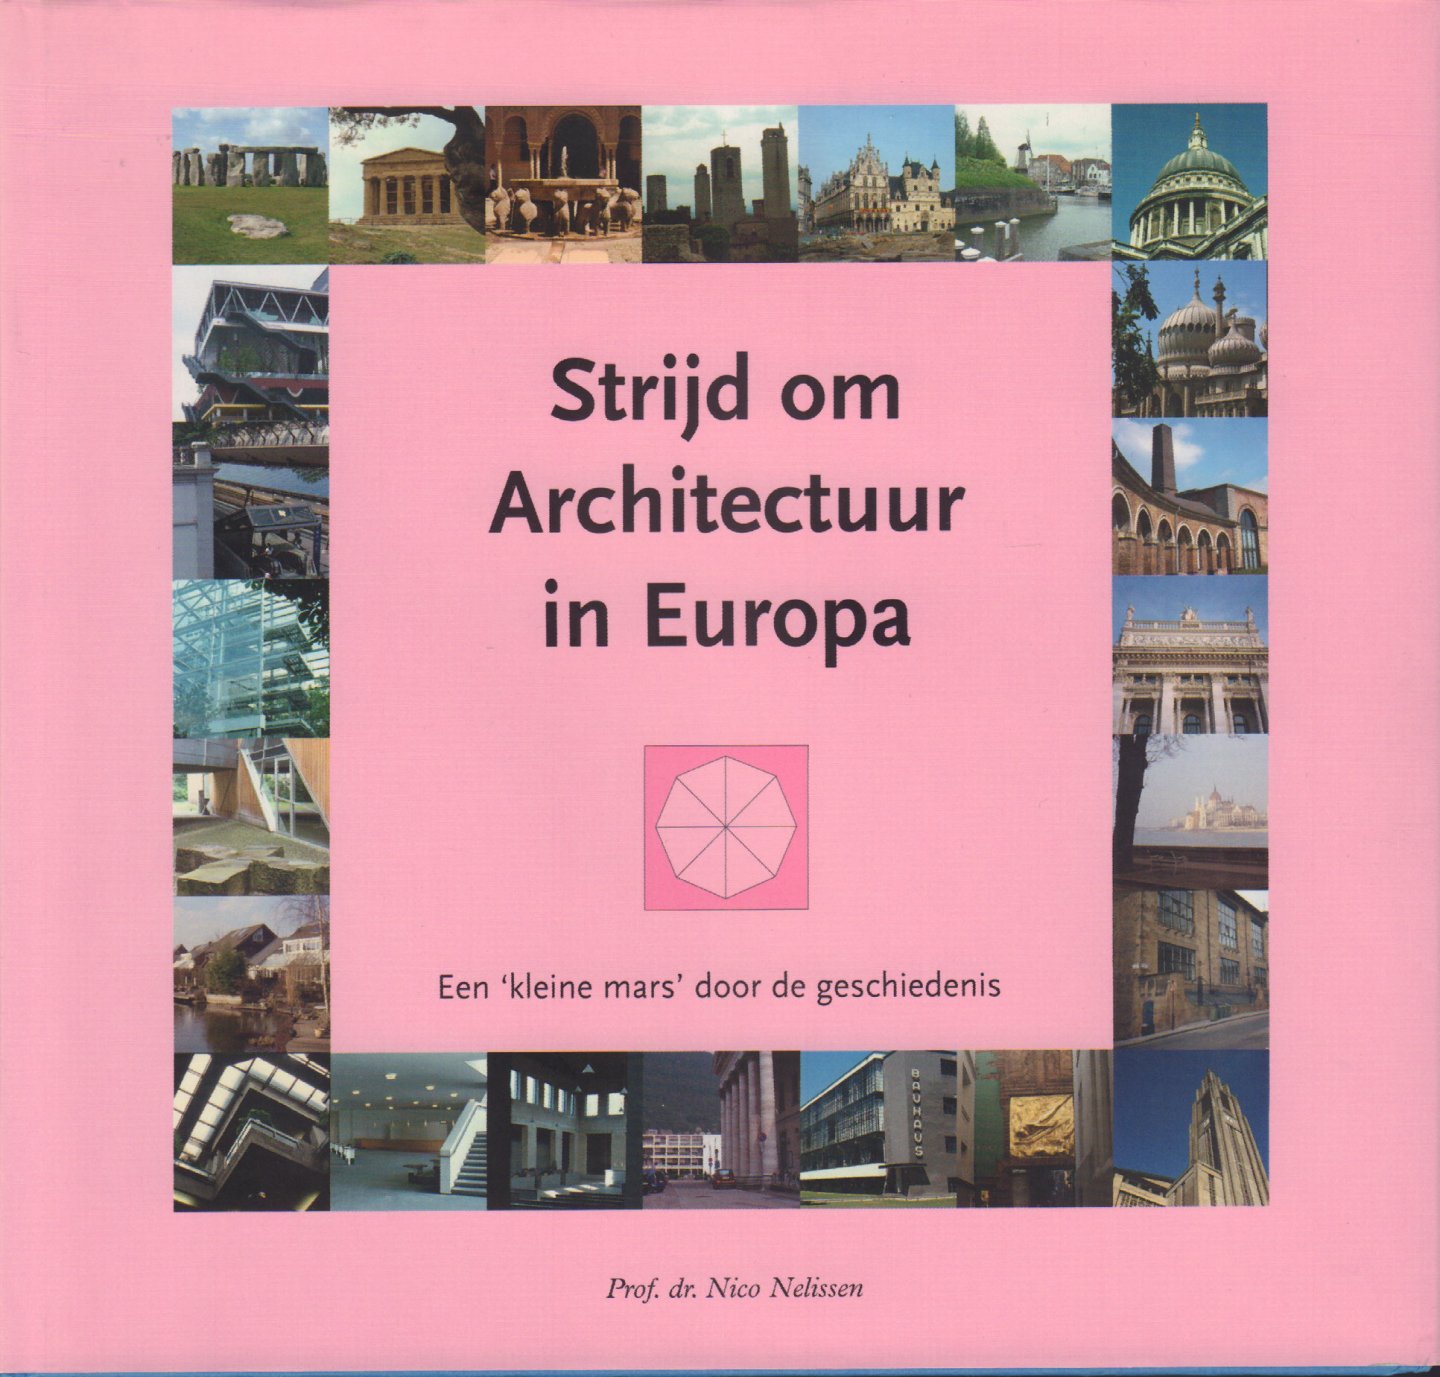 Nelissen, Prof. dr. Nico - Strijd om Architectuur in Europa (Een kleine mars door de geschiedenis), 254 pag. hardcover + stofomslag, gave staat